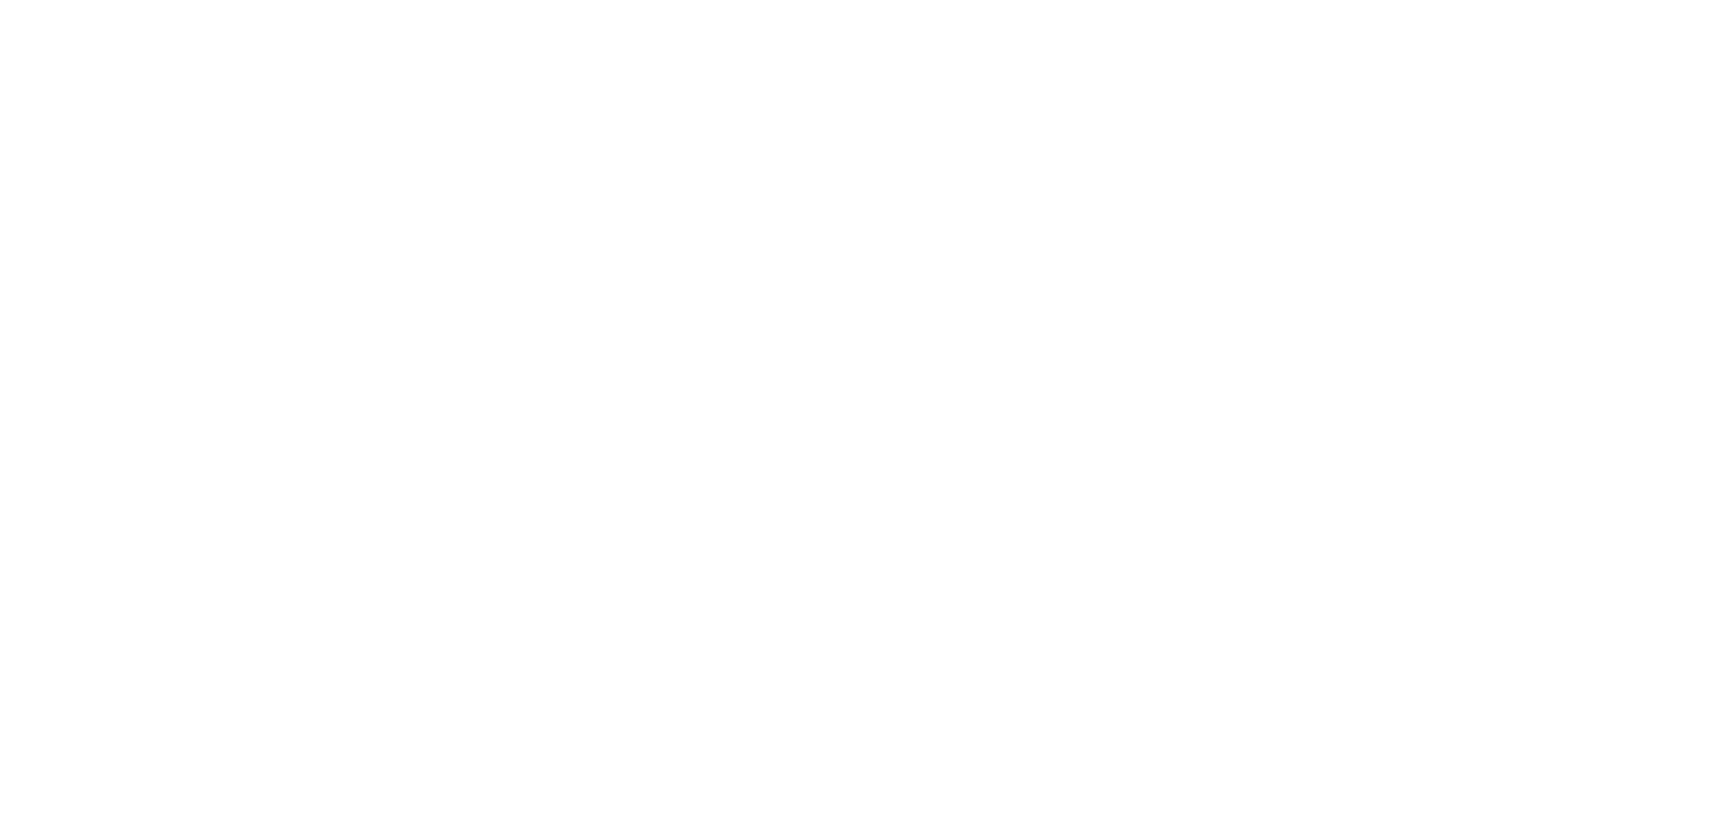 New: Brutal Fruit Cider